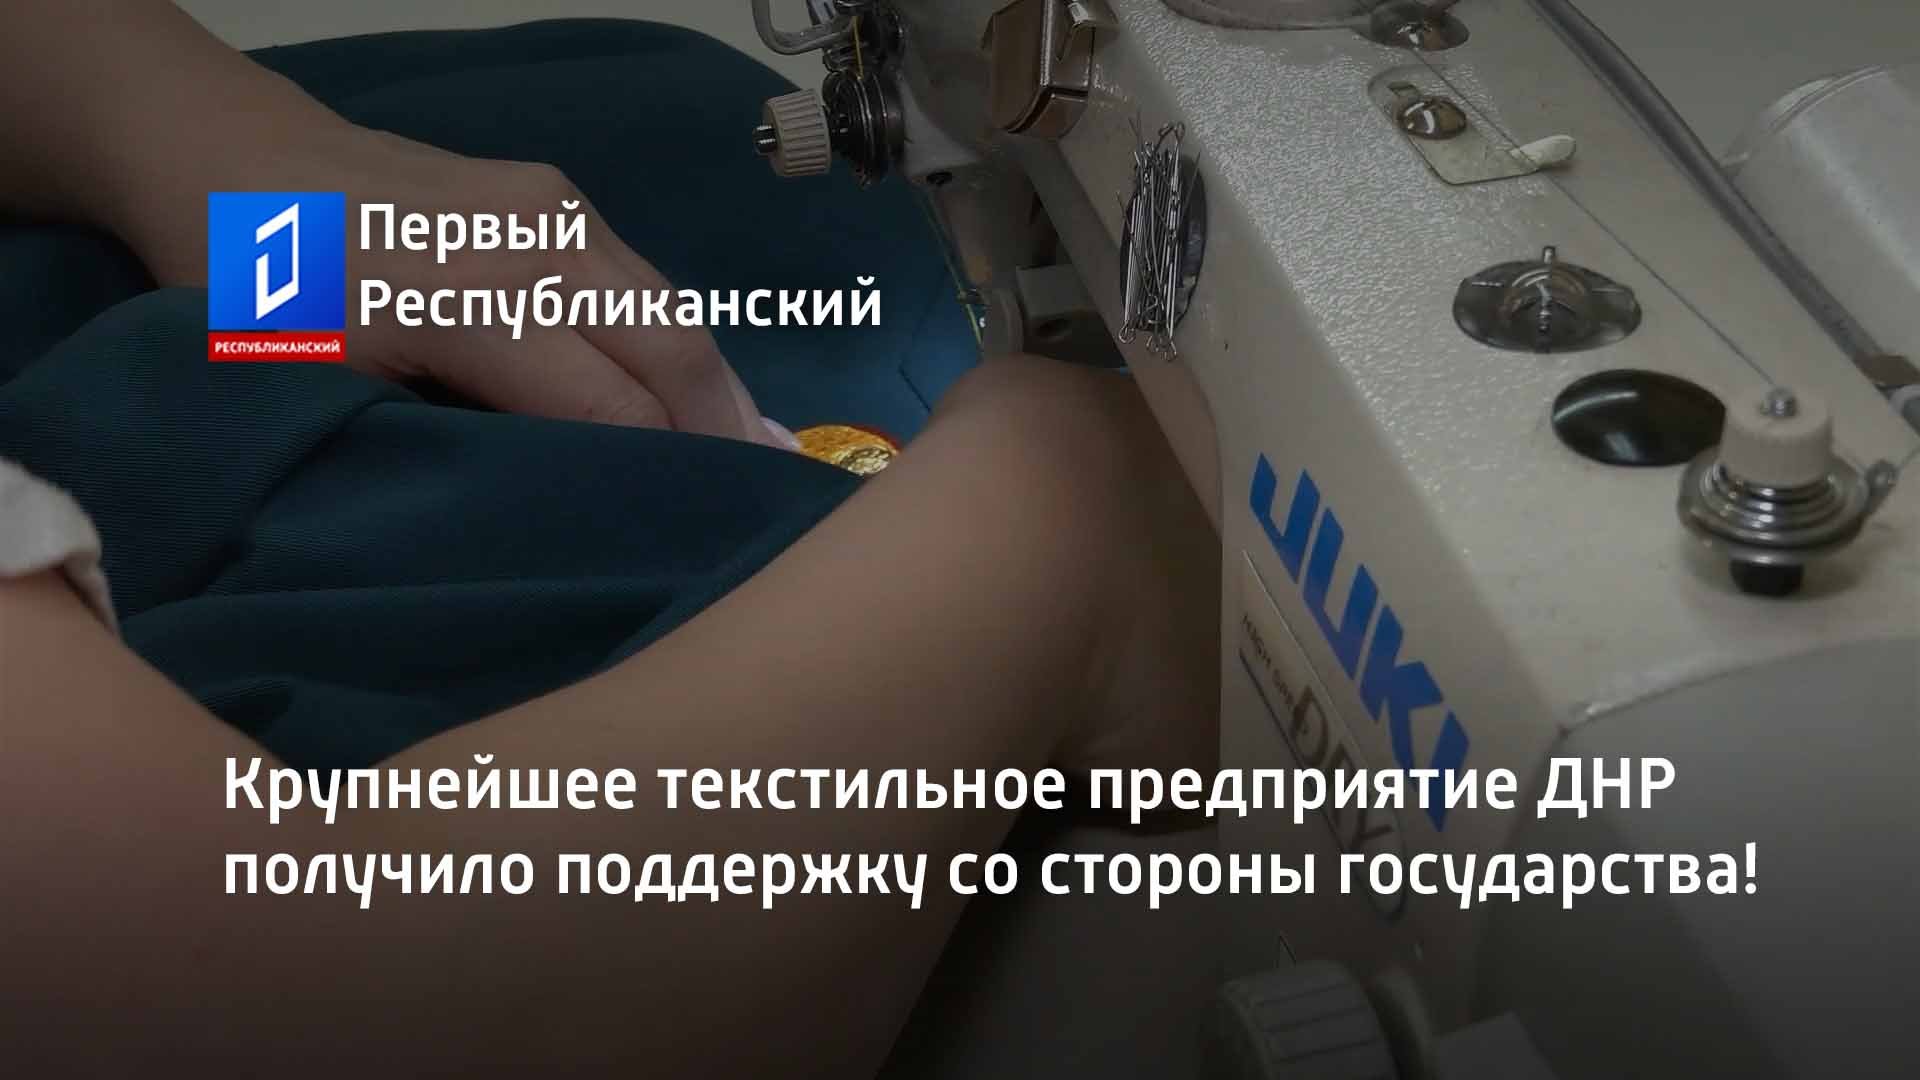 Крупнейшее текстильное предприятие ДНР получило поддержку со стороны государства!